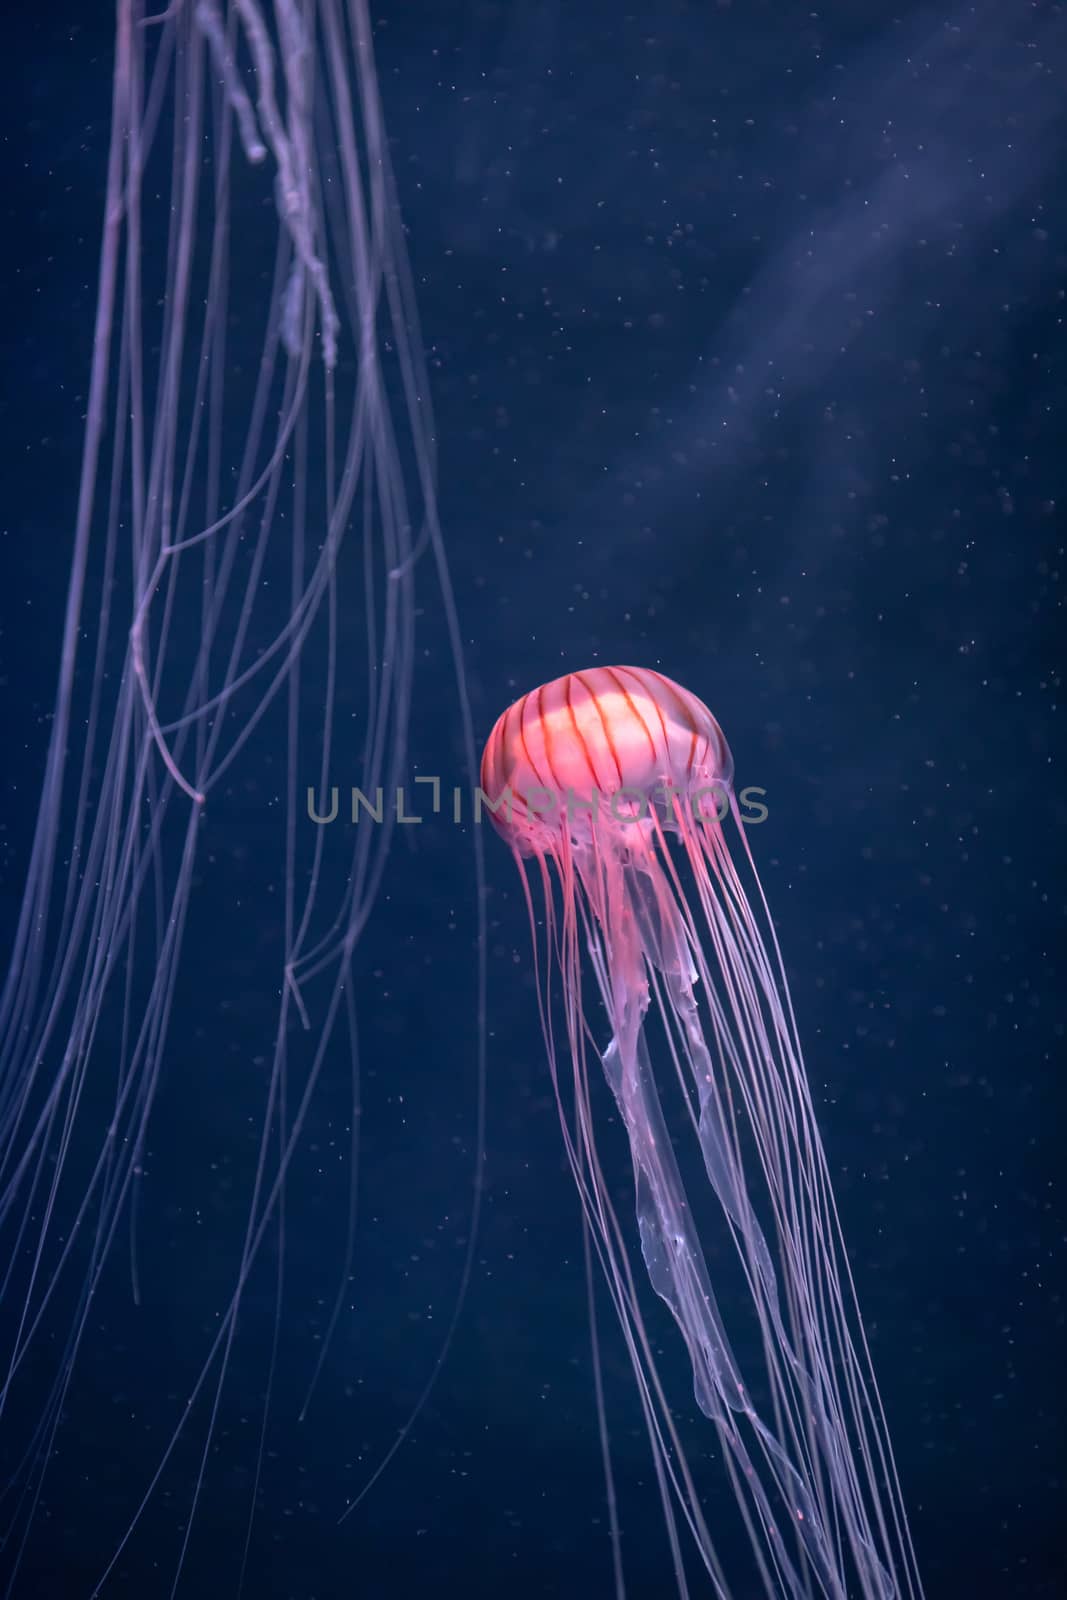 glowing jellyfish chrysaora pacifica underwater by nikkytok